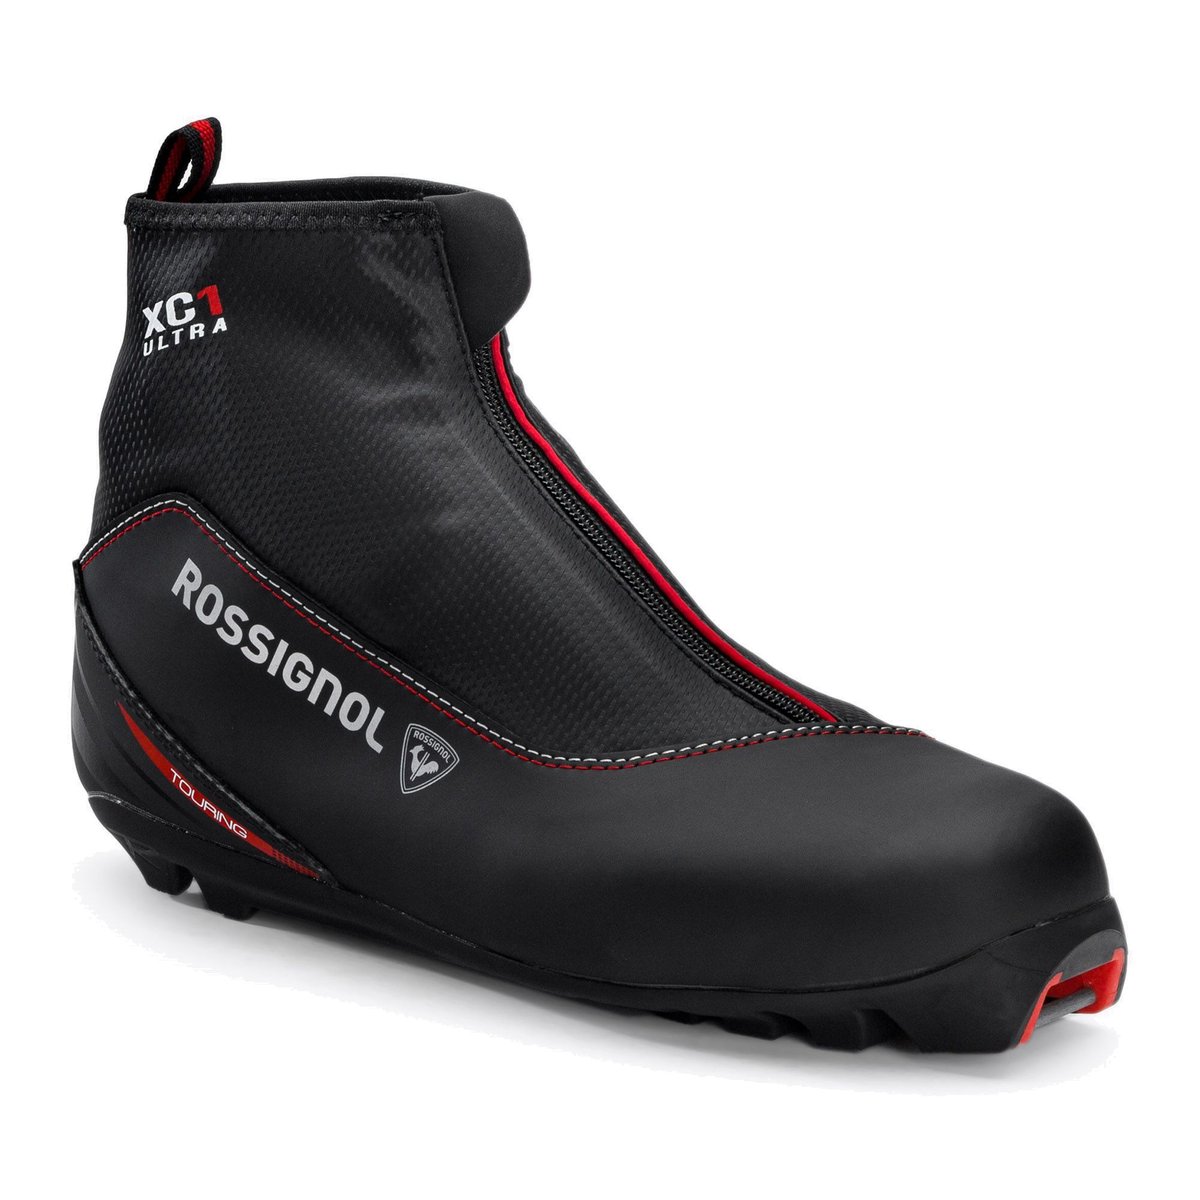 Buty do nart biegowych męskie Rossignol X-1 Ultra czarne RIJW080  43 eu